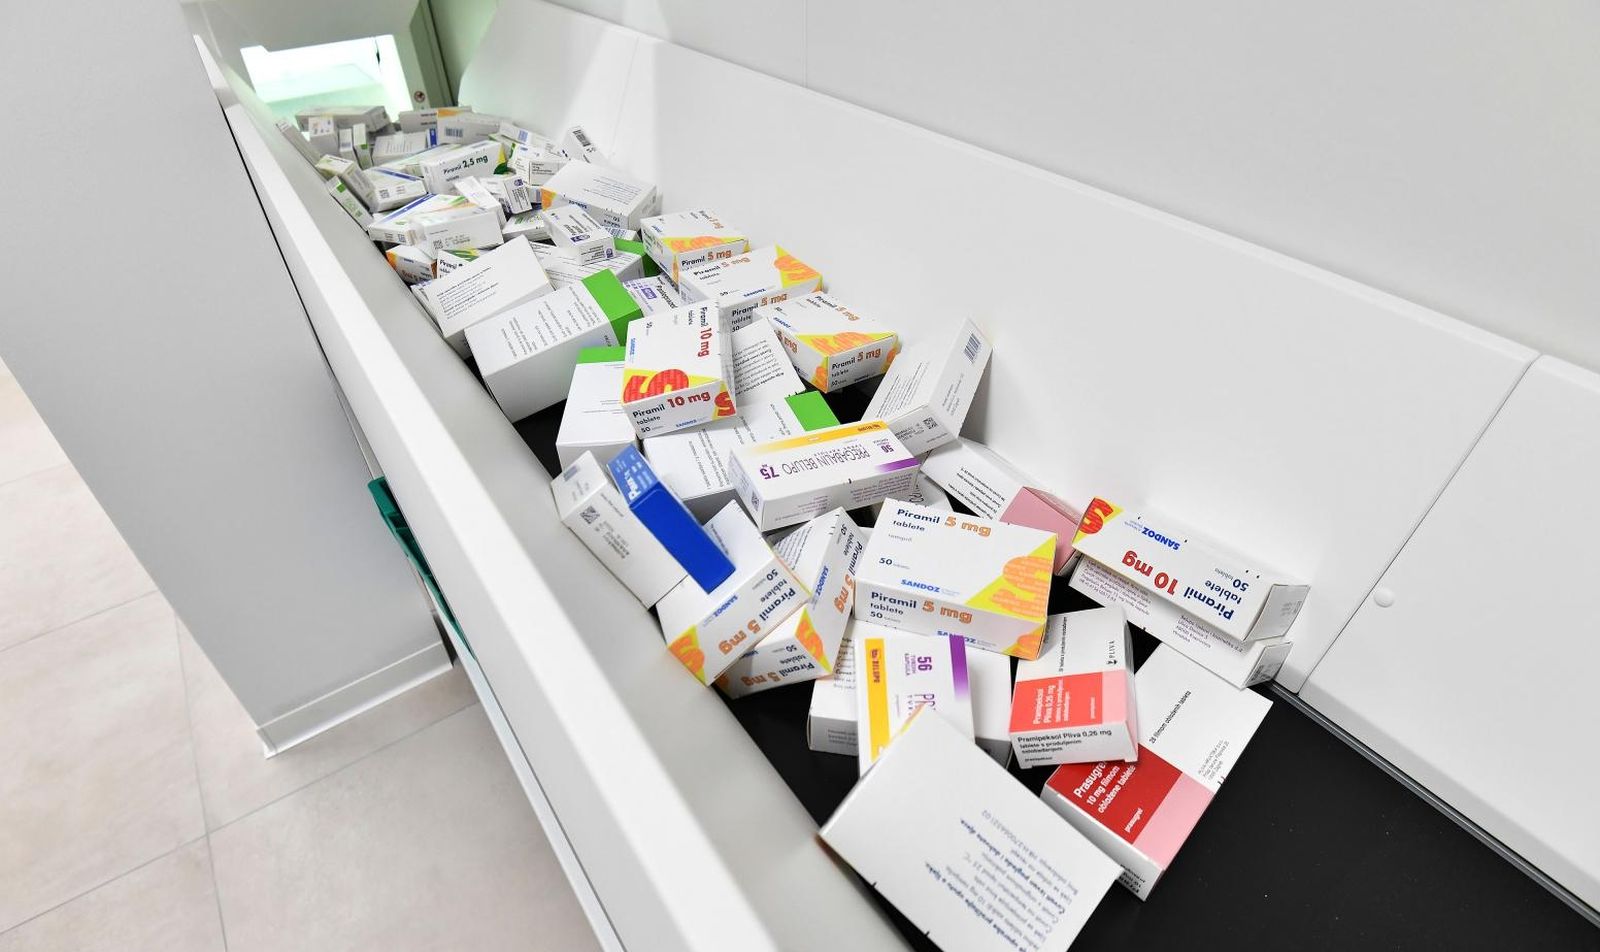 24.12.2020., Varazdin - Ljekarne varazdinske zupanije predstavile su automatizirano skladiste vrijedno 1.7 milijuna kuna koje osigurava automatsko zaprimanje, pohranu i isporuku lijekova. Photo: Vjeran Zganec Rogulja/PIXSELL